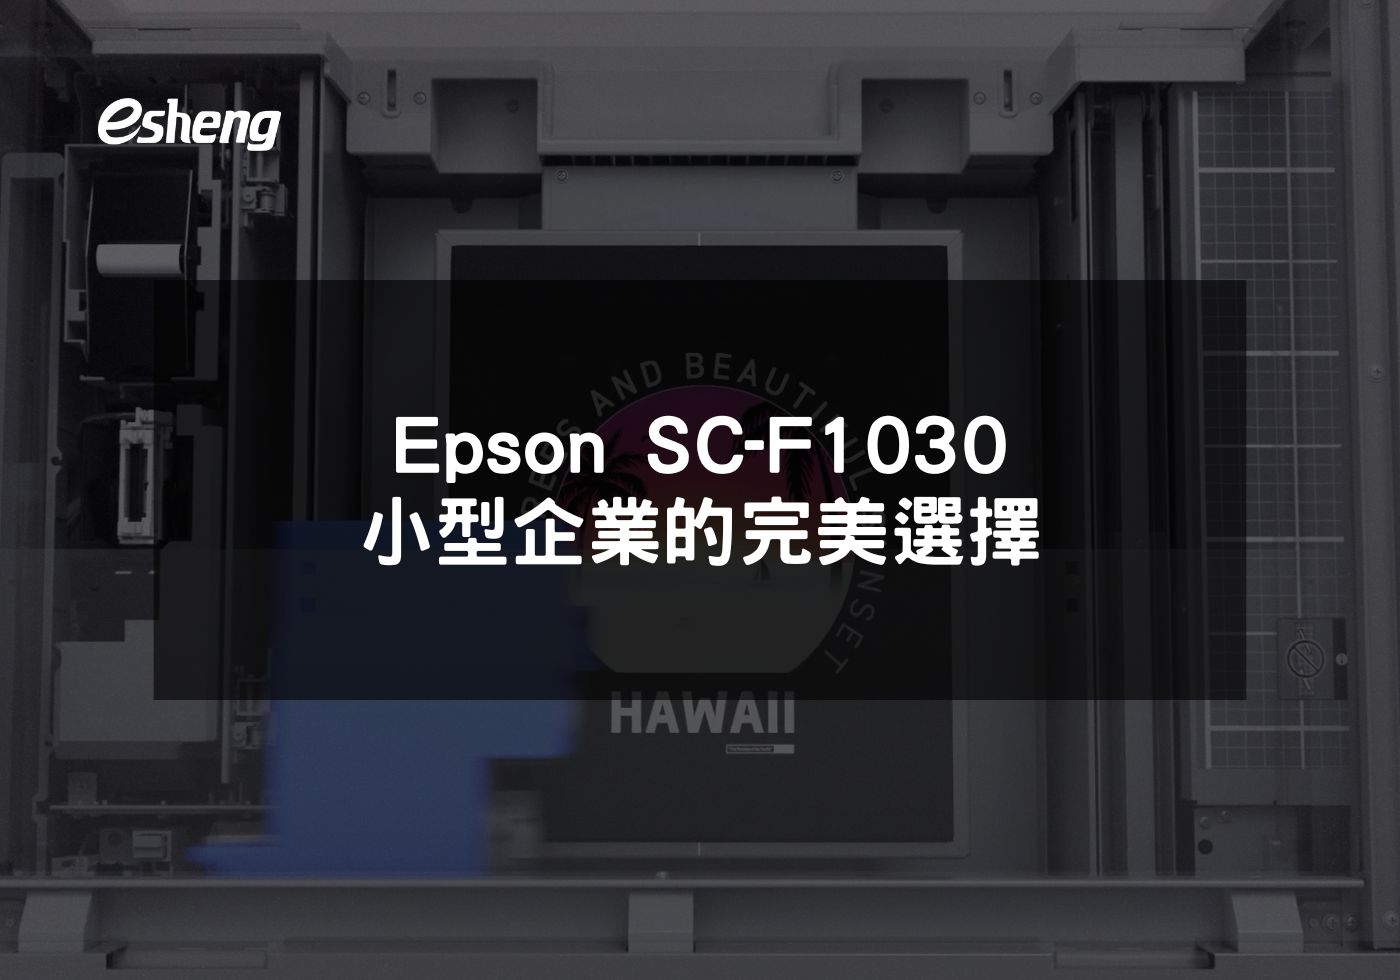 閱讀更多文章 Epson SC-F1030 小型企業的完美選擇